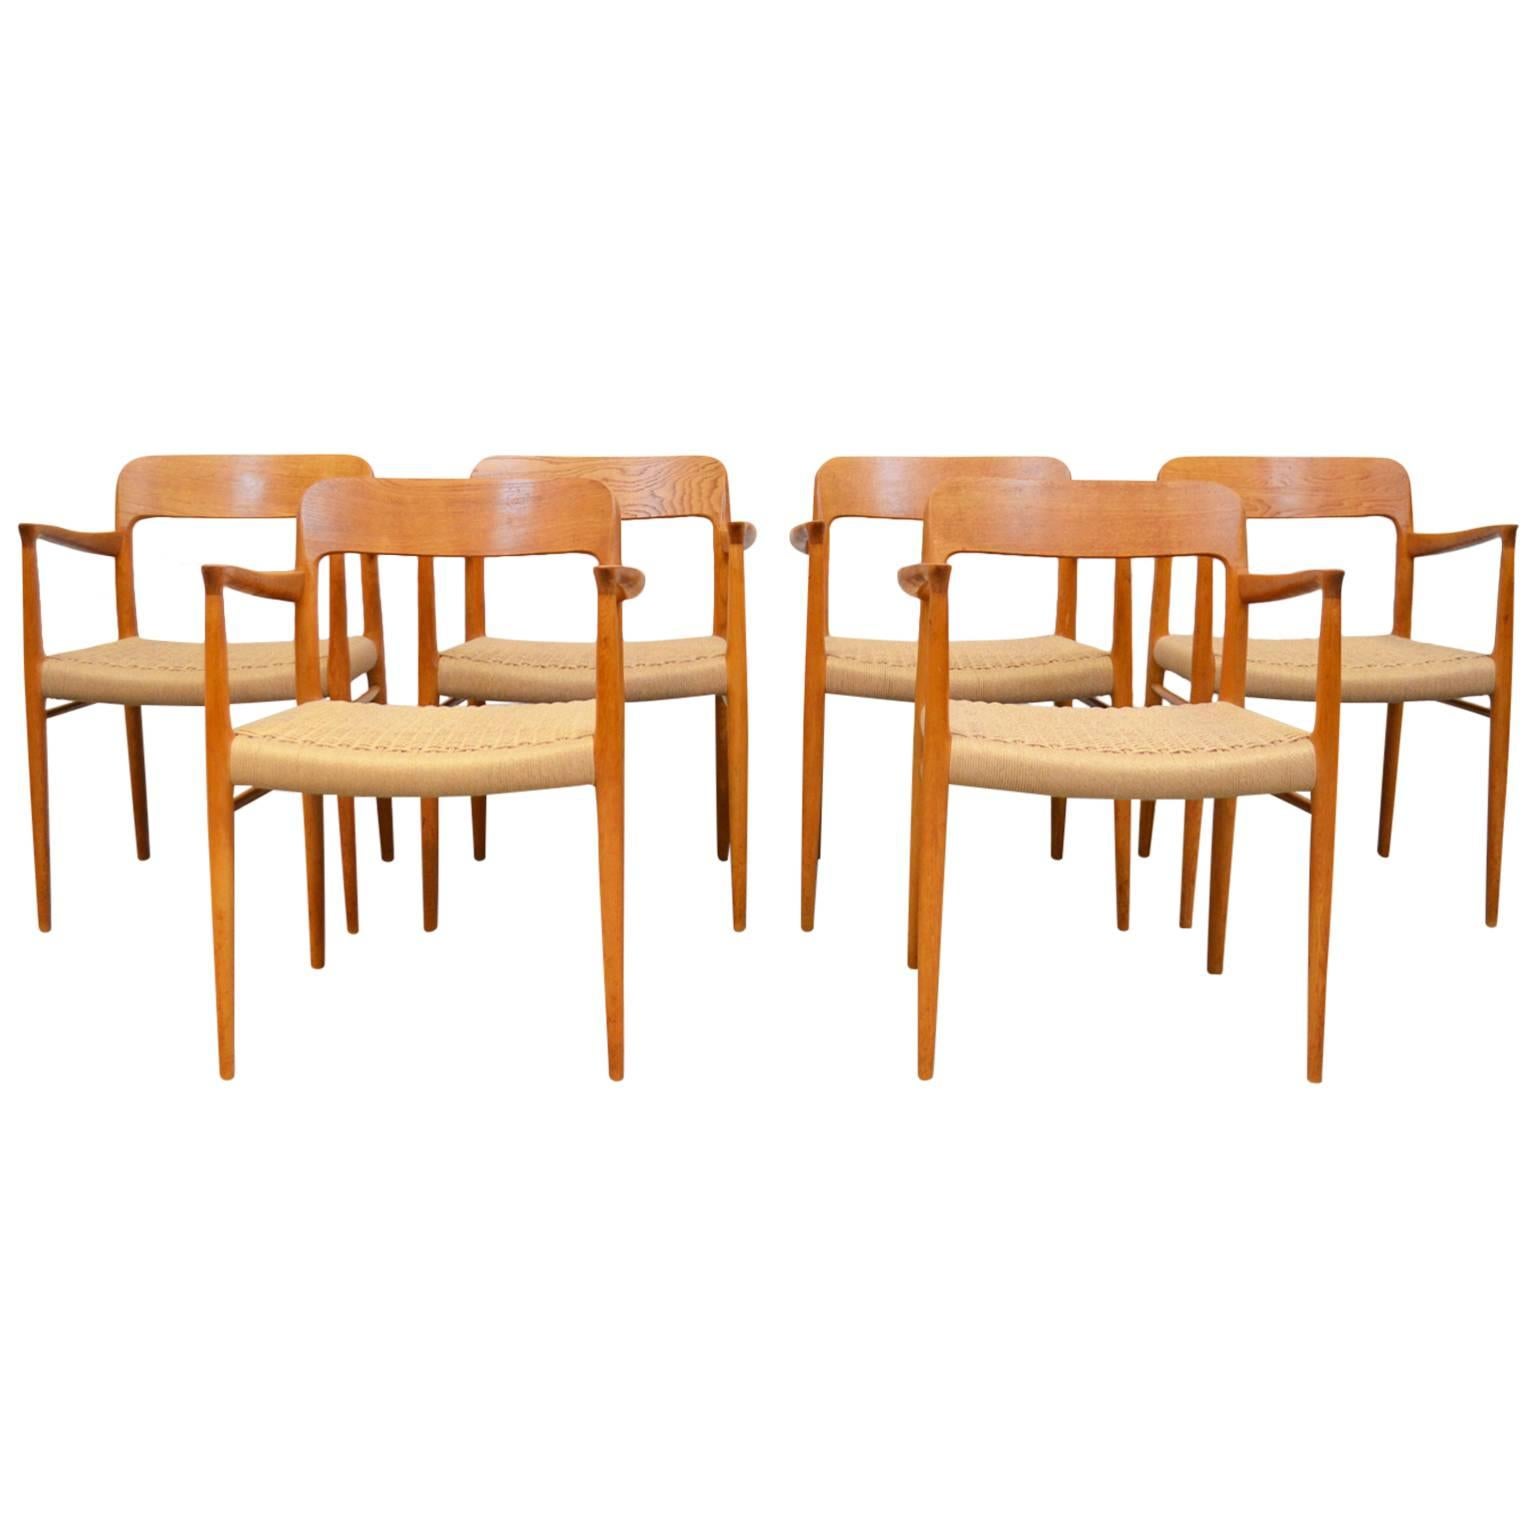 Dining Chairs Model 56 by Niels Otto Møller for J.L. Møller Møbelfabrik, Denmark